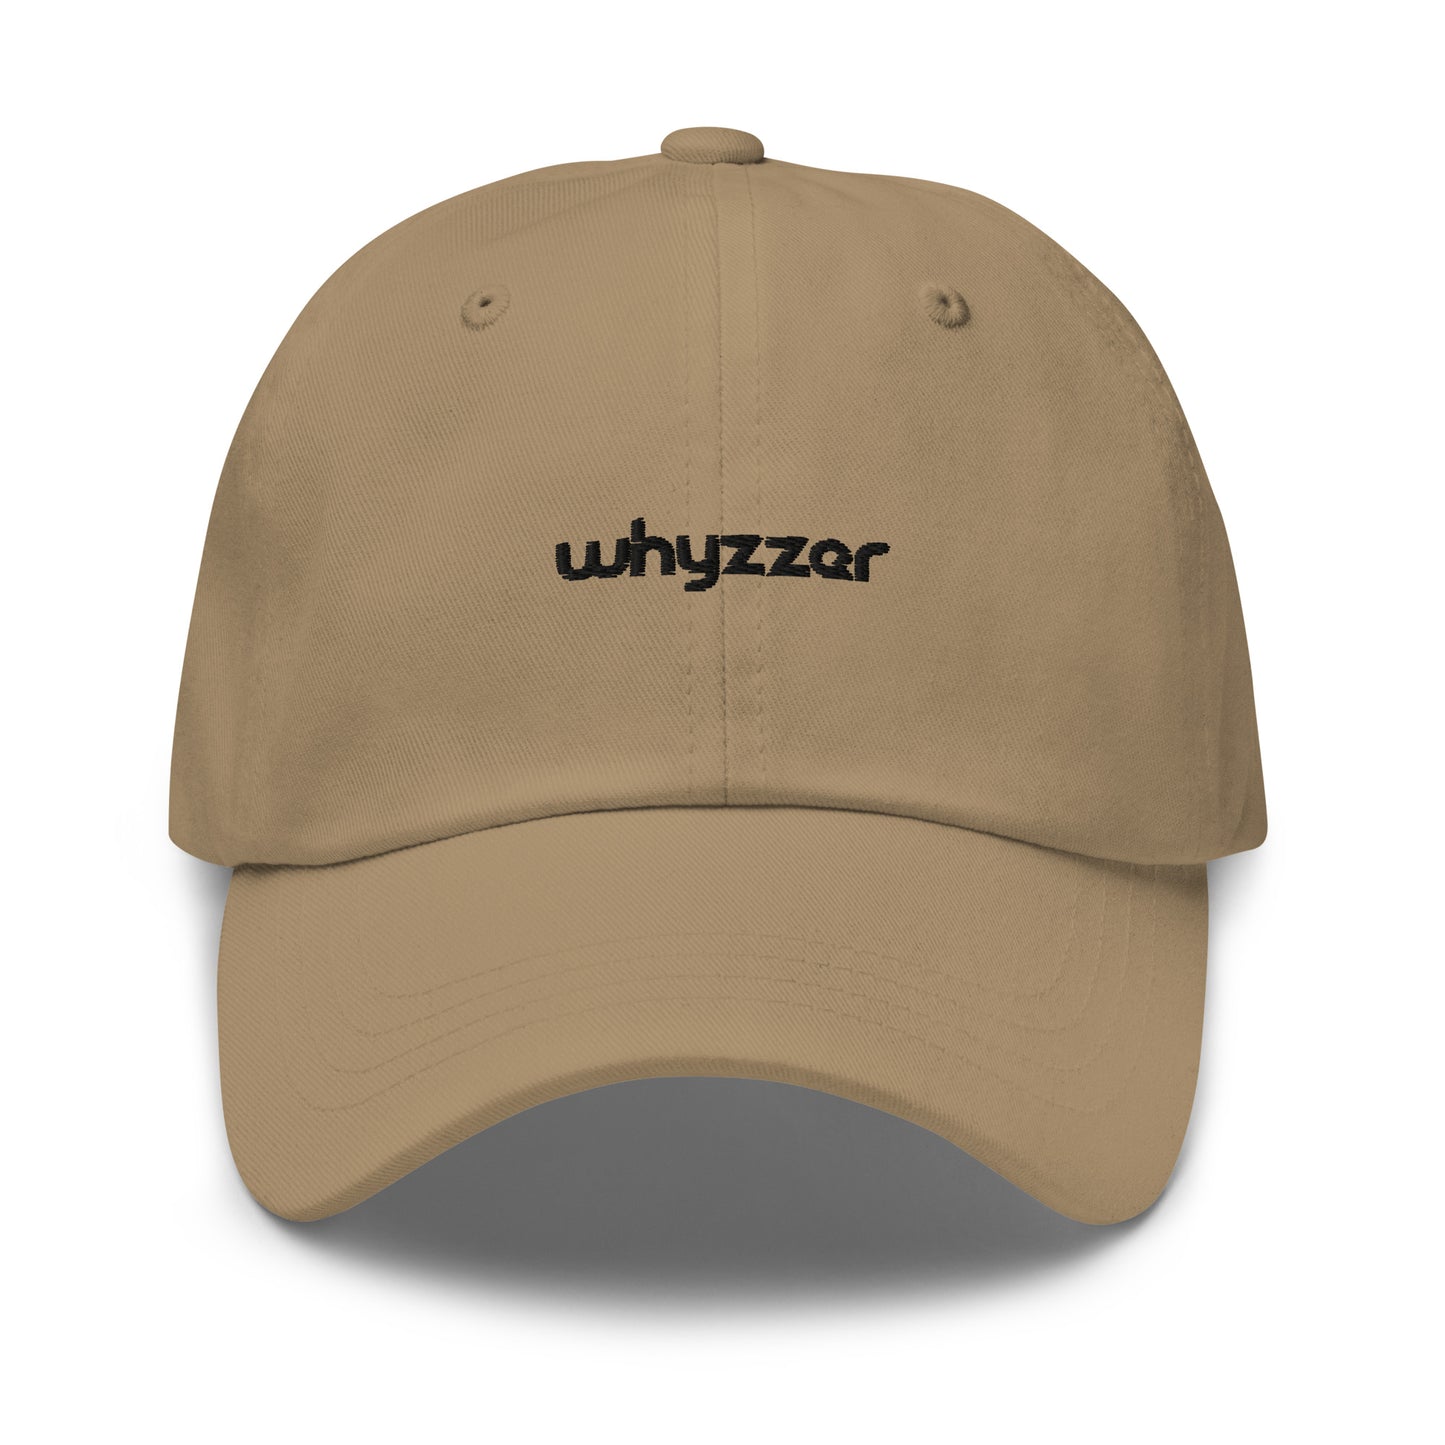 Whyzzer - Dad hat